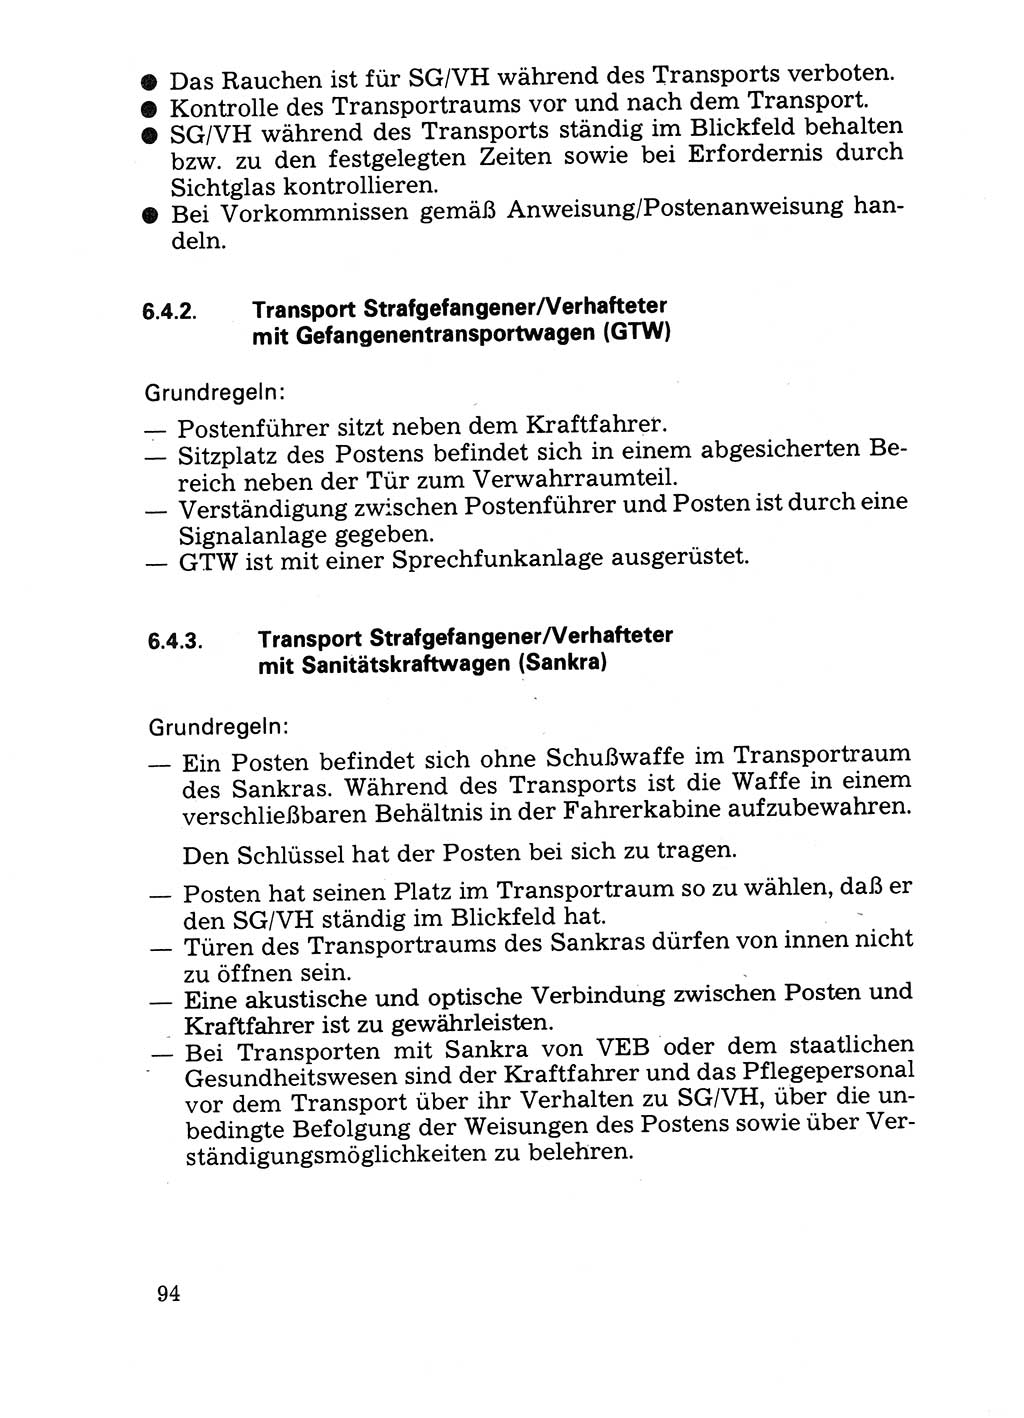 Handbuch für operative Dienste, Abteilung Strafvollzug (SV) [Ministerium des Innern (MdI) Deutsche Demokratische Republik (DDR)] 1981, Seite 94 (Hb. op. D. Abt. SV MdI DDR 1981, S. 94)